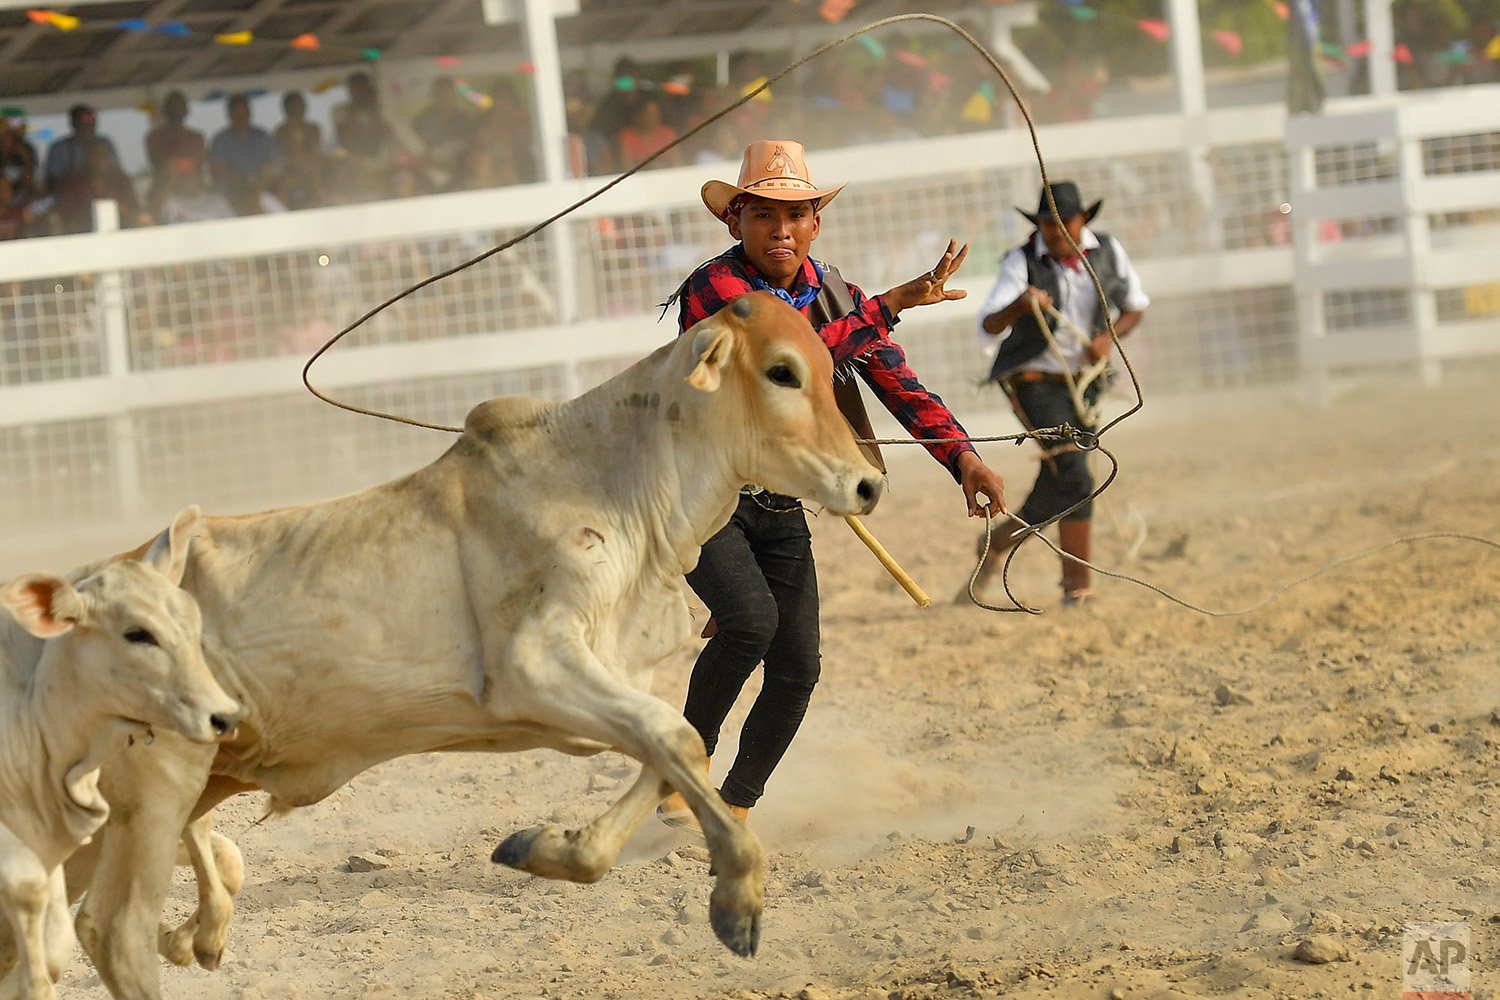 Guyana Rodeo Festival